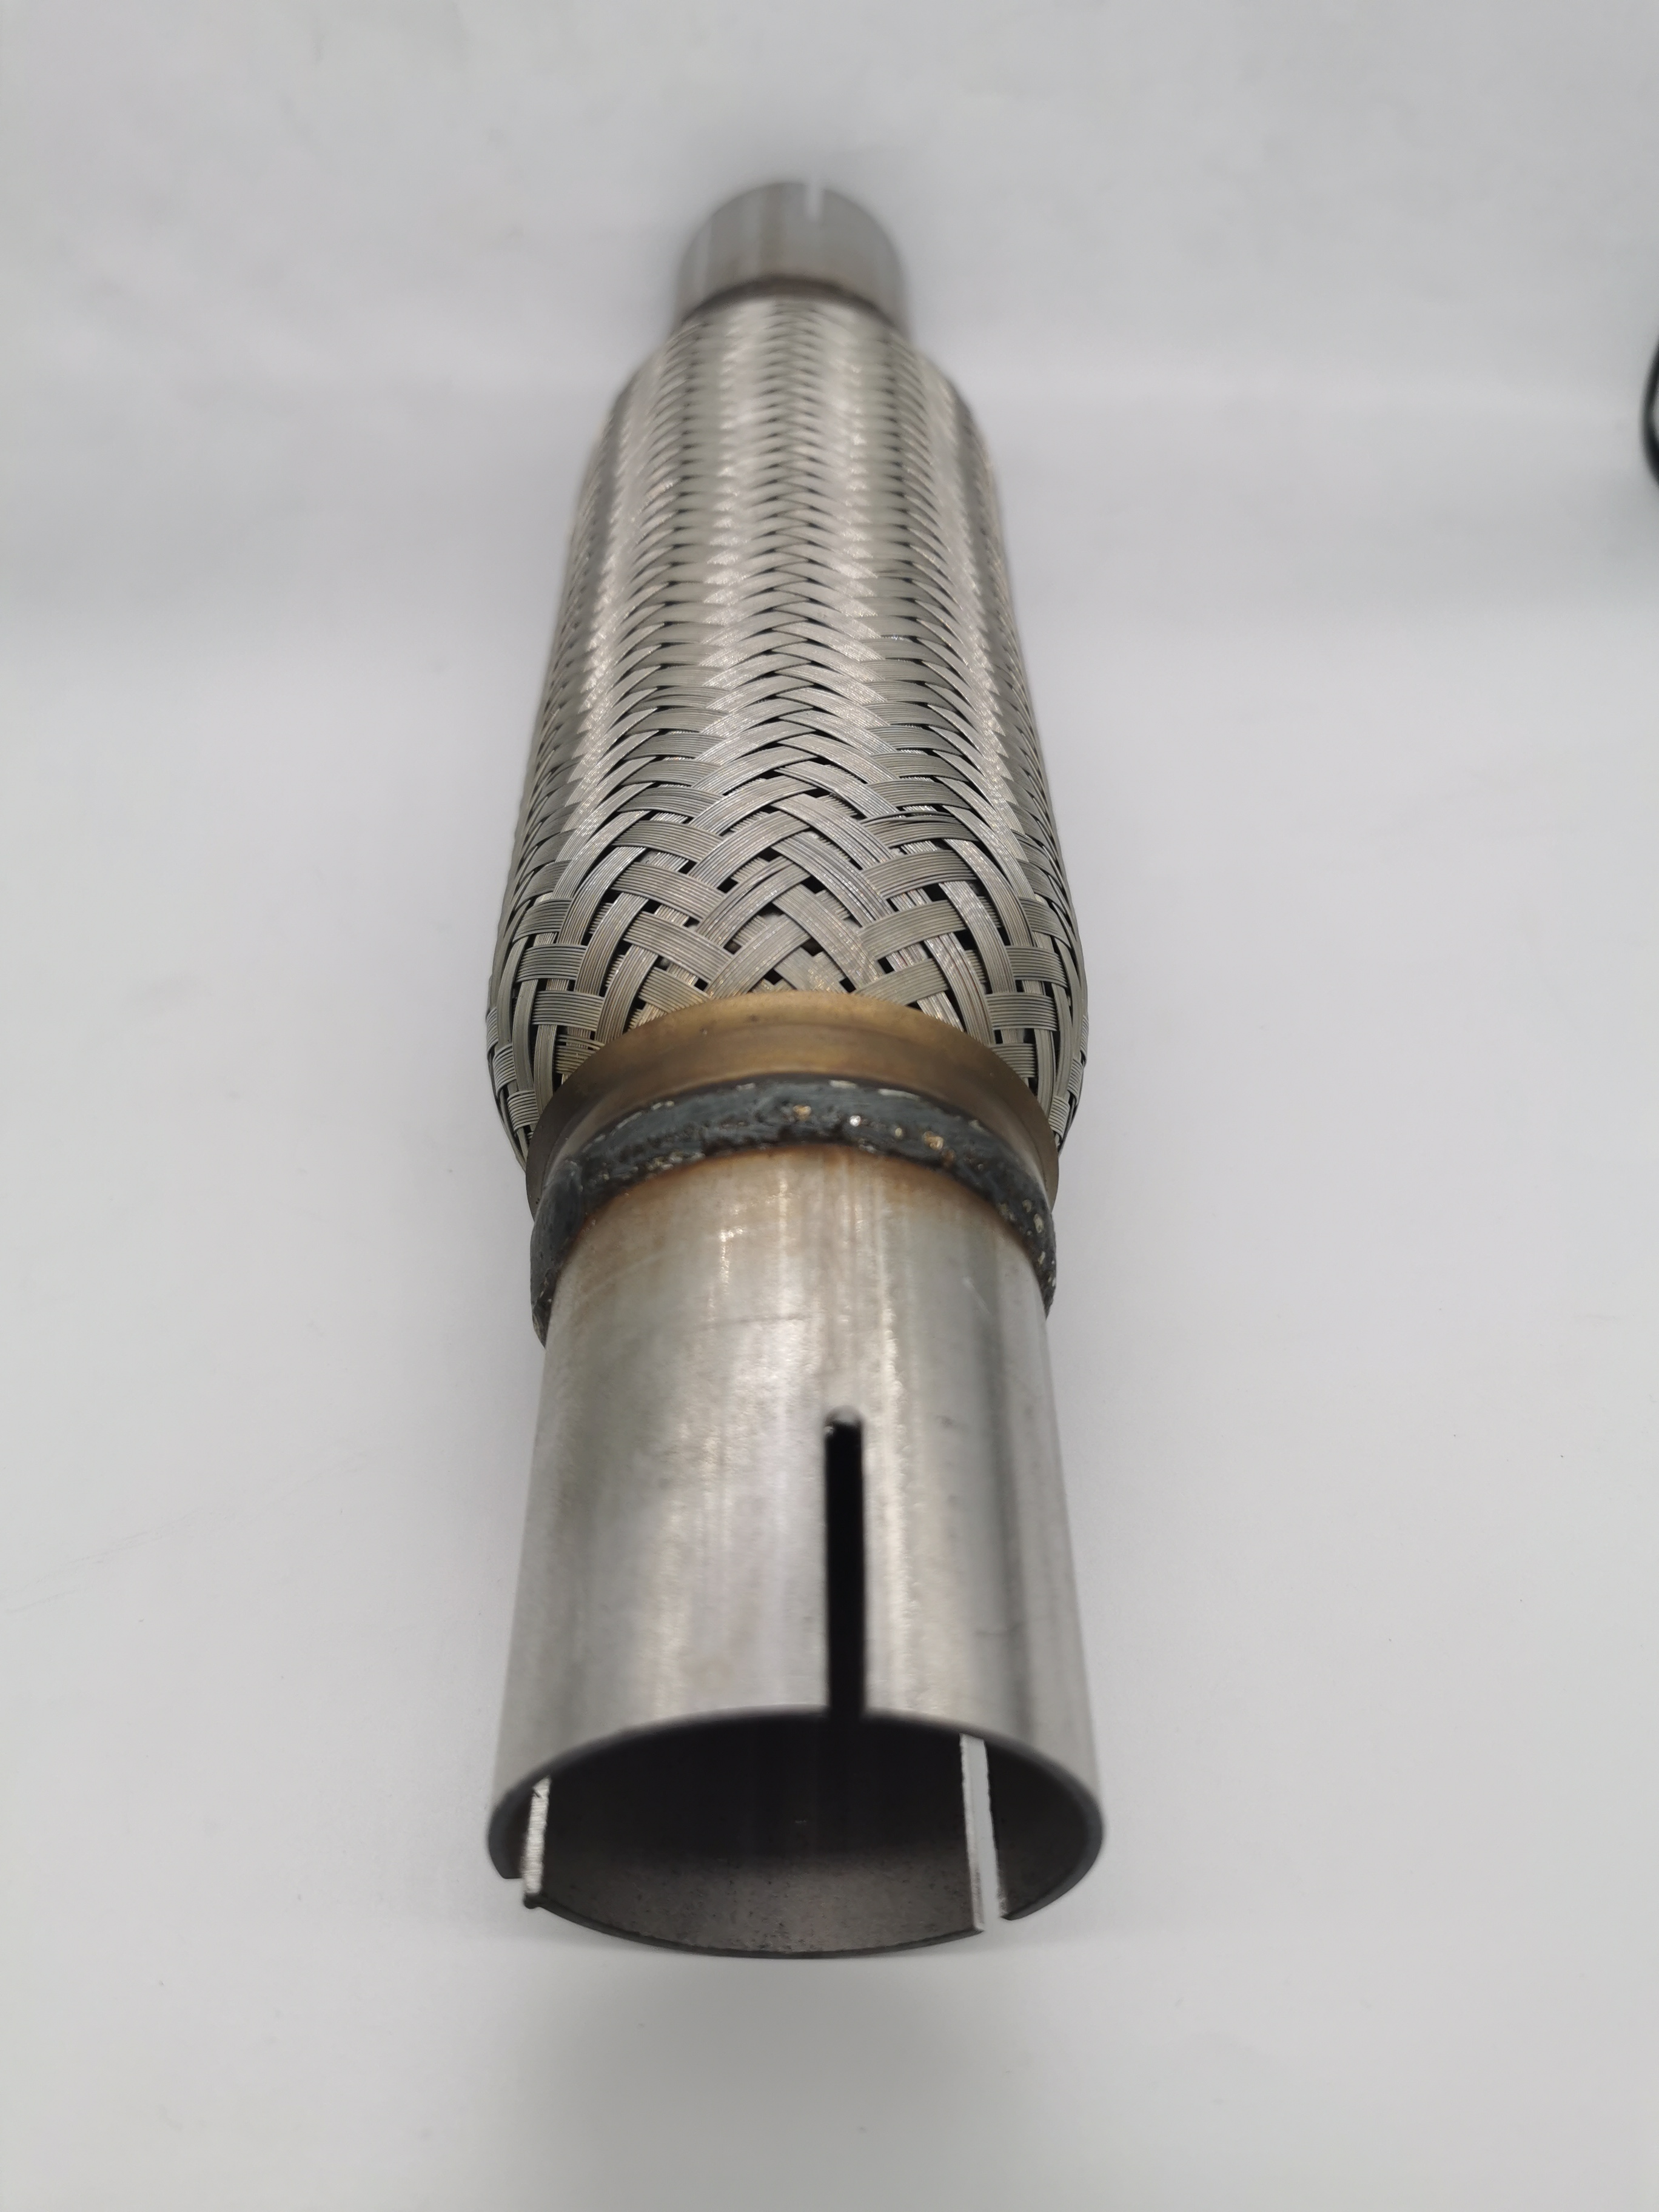 Proveedor de tubos de escape flexibles para alta temperatura automotriz